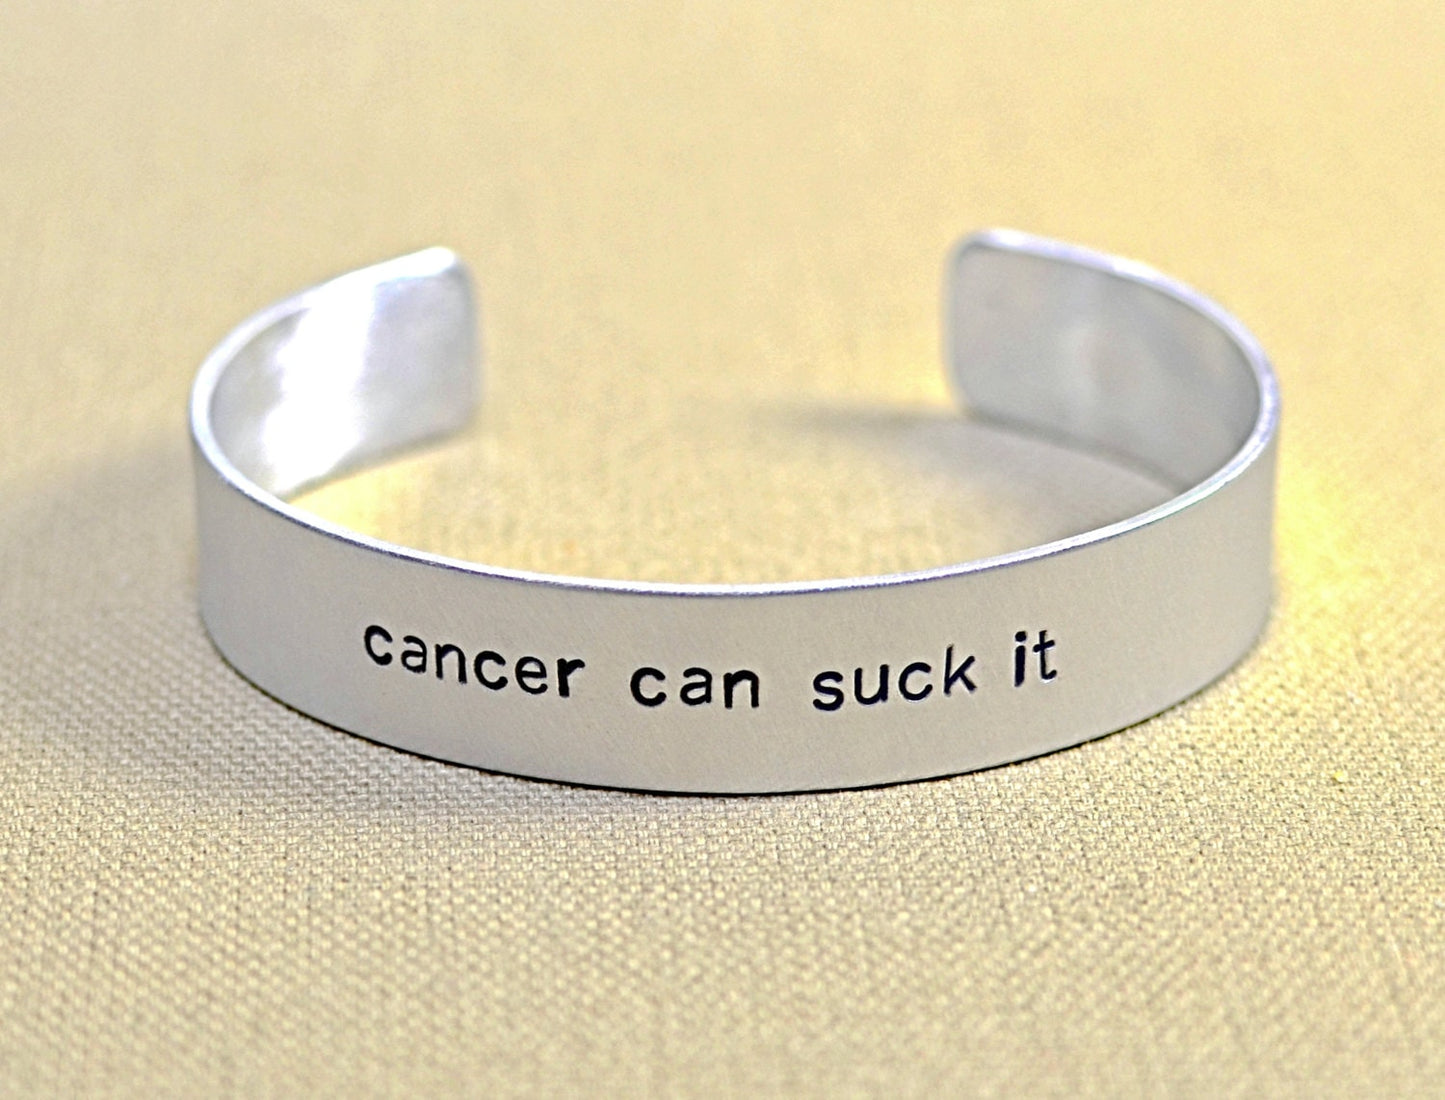 Cancer can suck it aluminum cuff bracelet